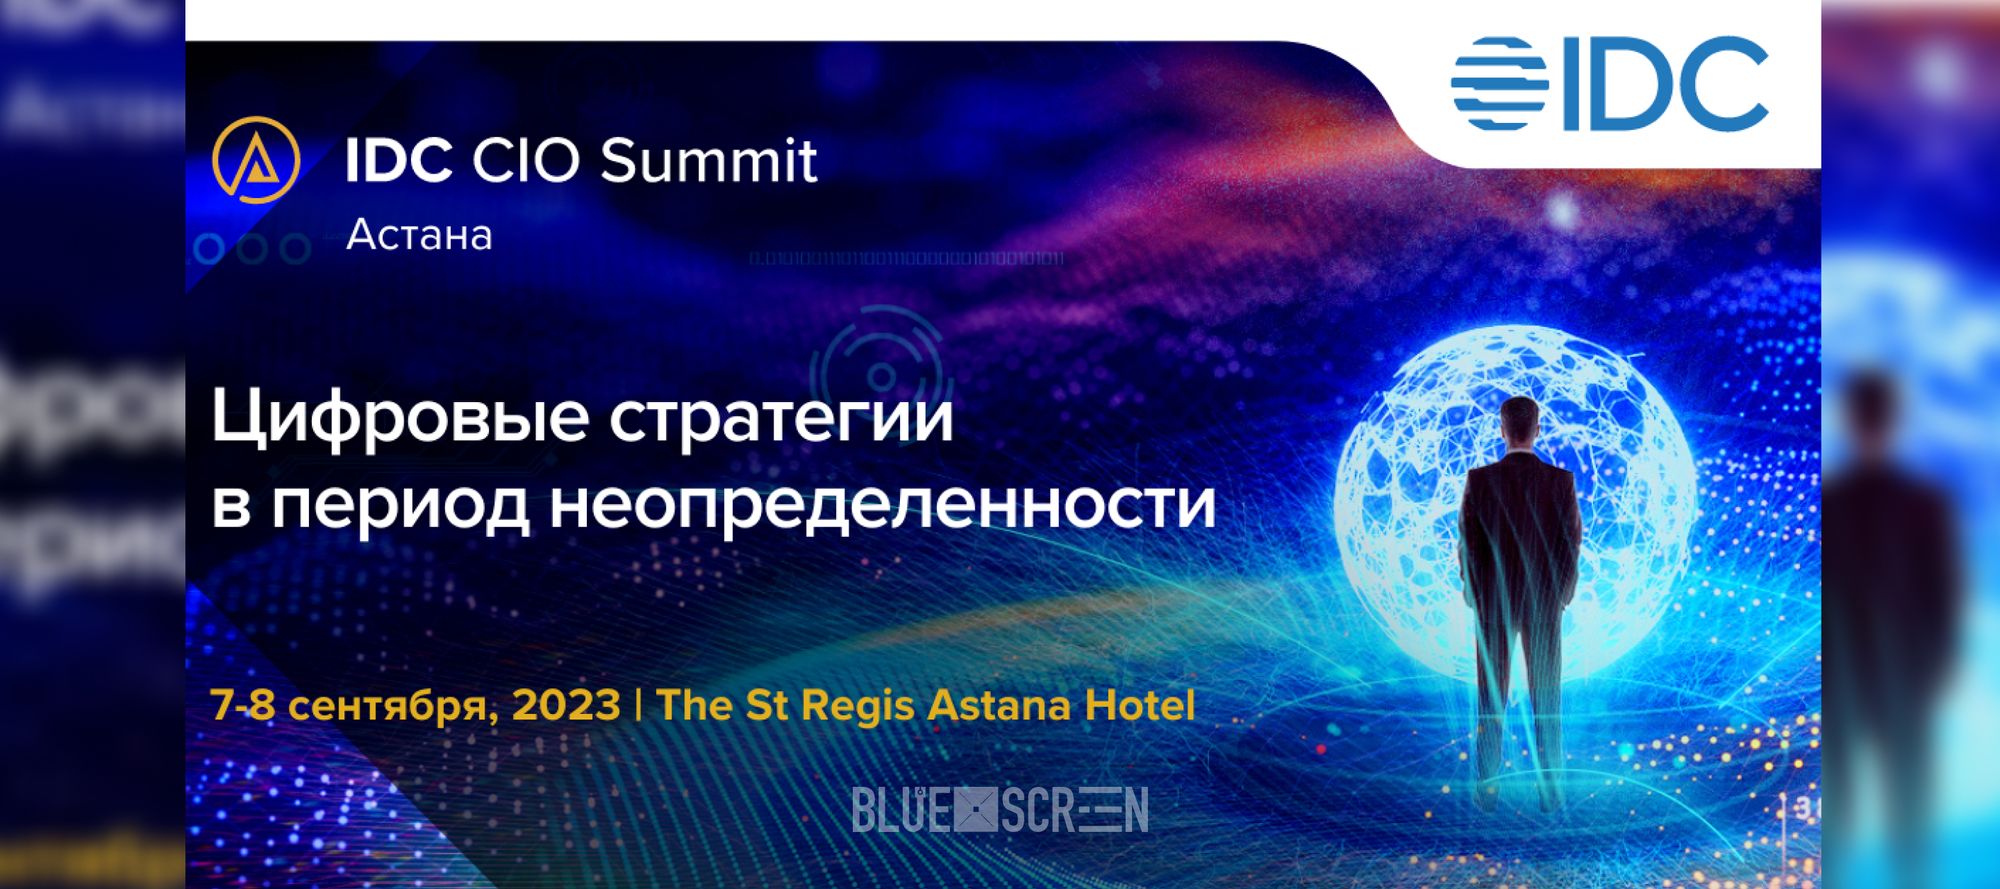 IDC CIO Summit 2023 пройдет 7-8 сентября в Астане